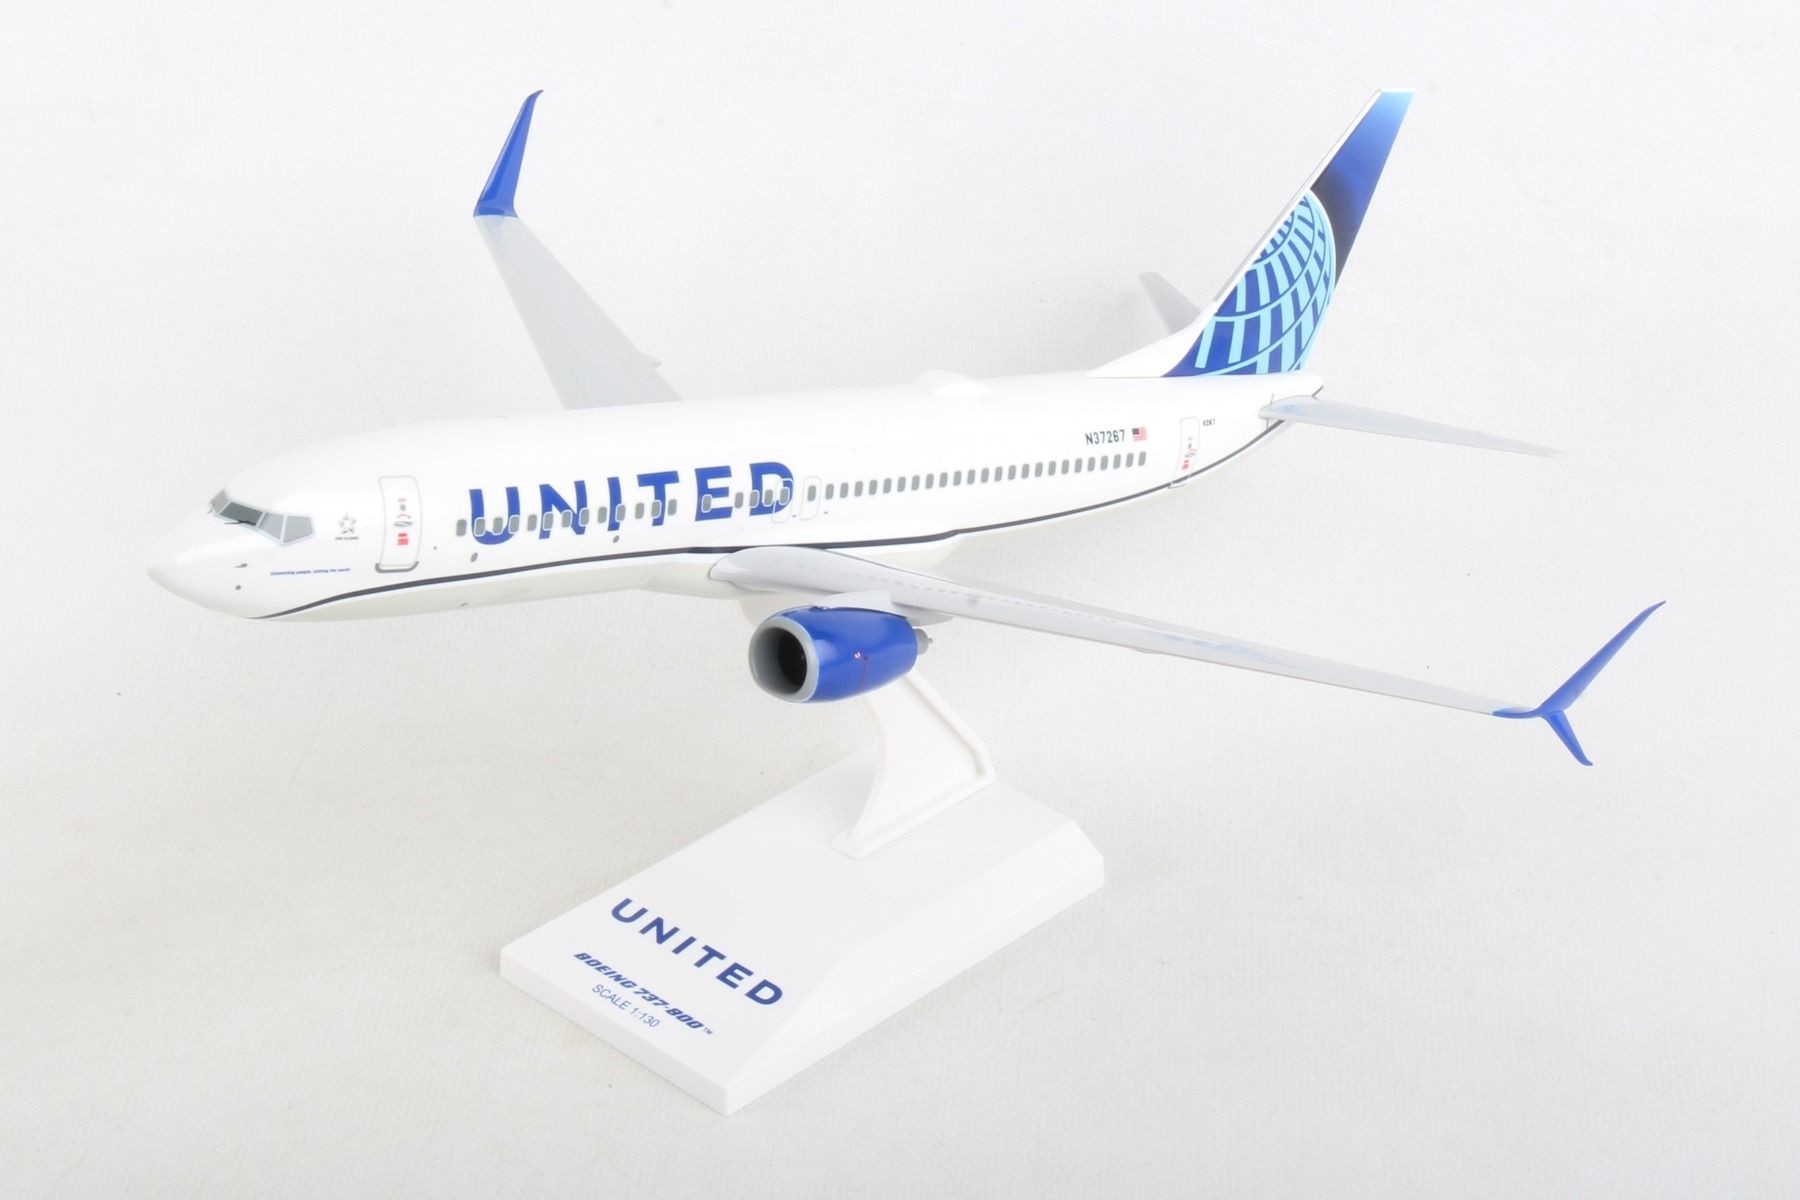 united airlines-boeing 737-800 1:130 skr1028 skymarks avión modelo b737 